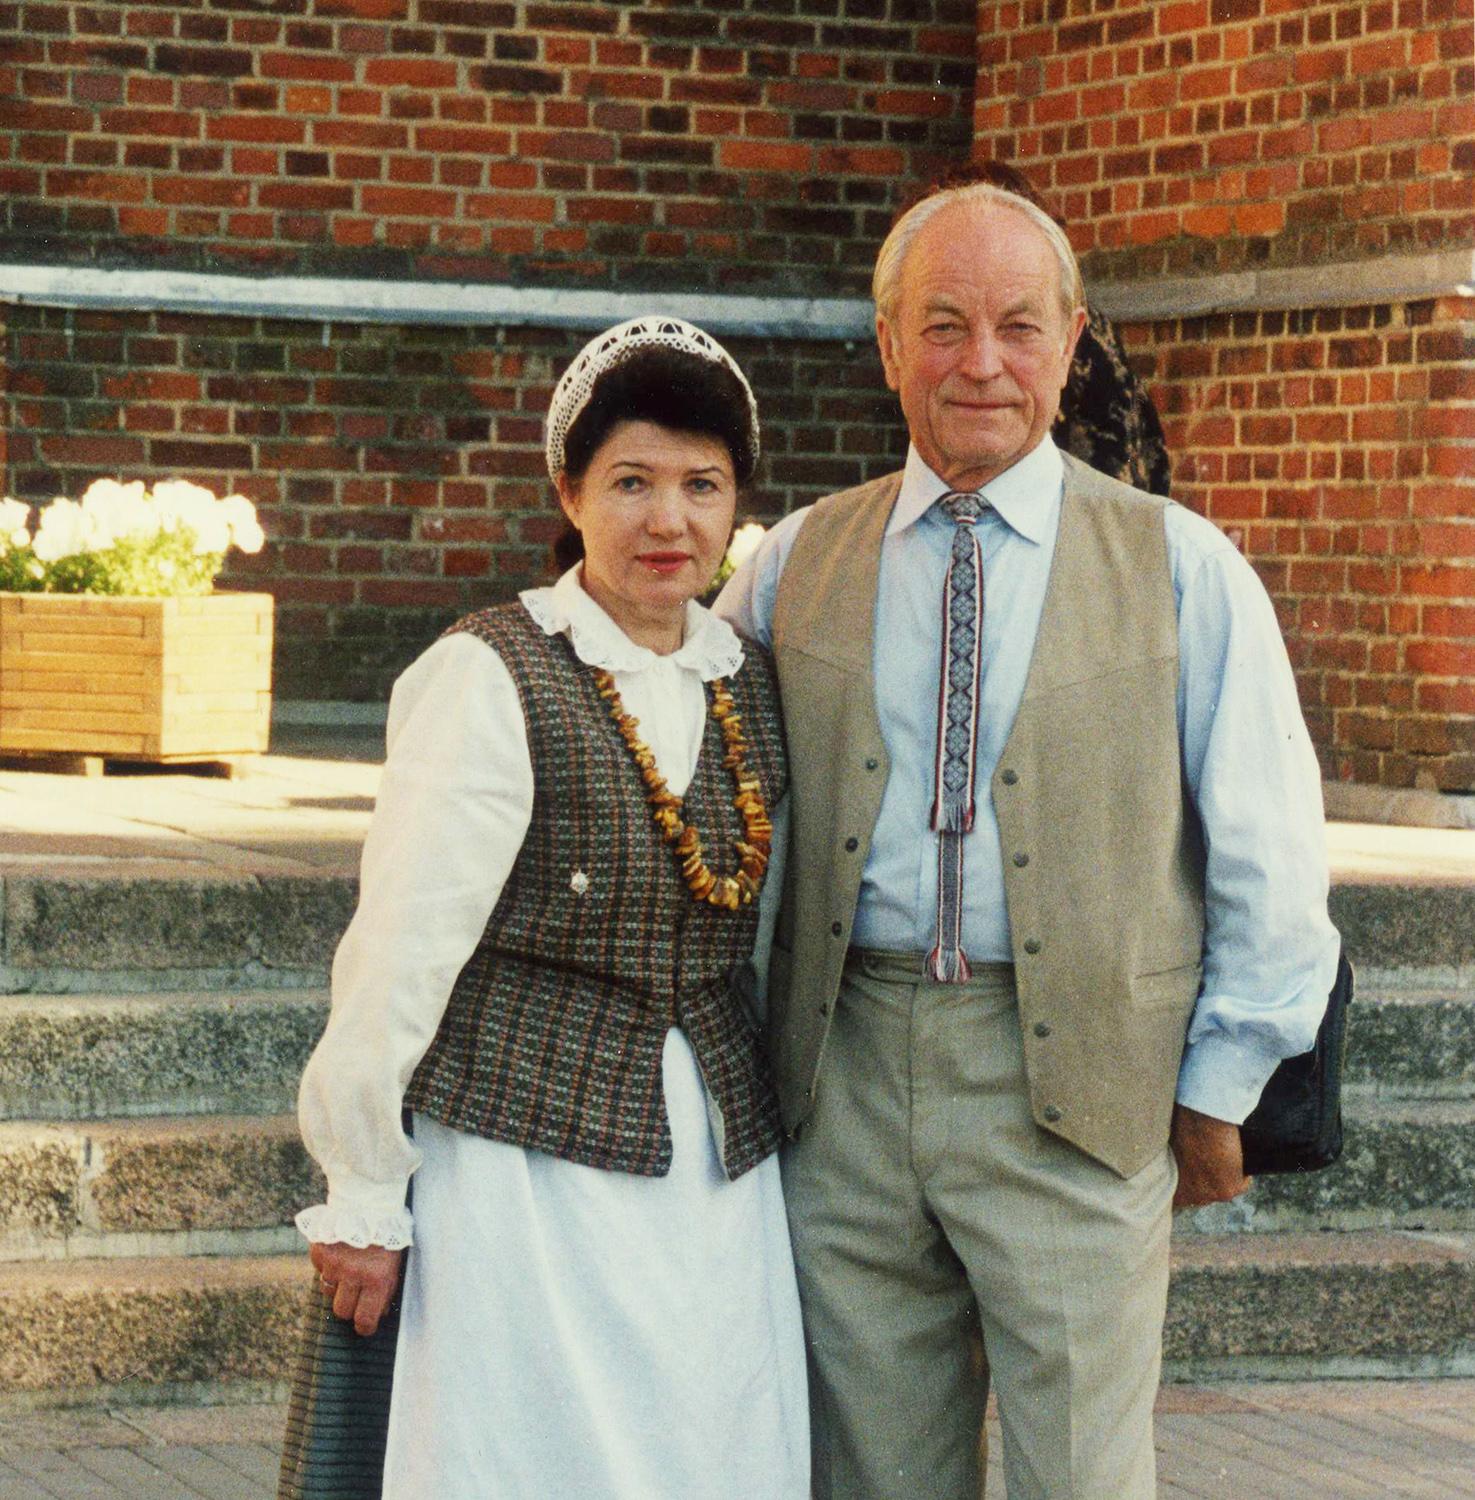 Vienoje darbovietėje – jau 46-erius metus / Gydytoja Genovaitė Gražina Šaulienė 2008-aisiais su vyru Romu Petru Šauliu.    Asmeninio archyvo nuotr.